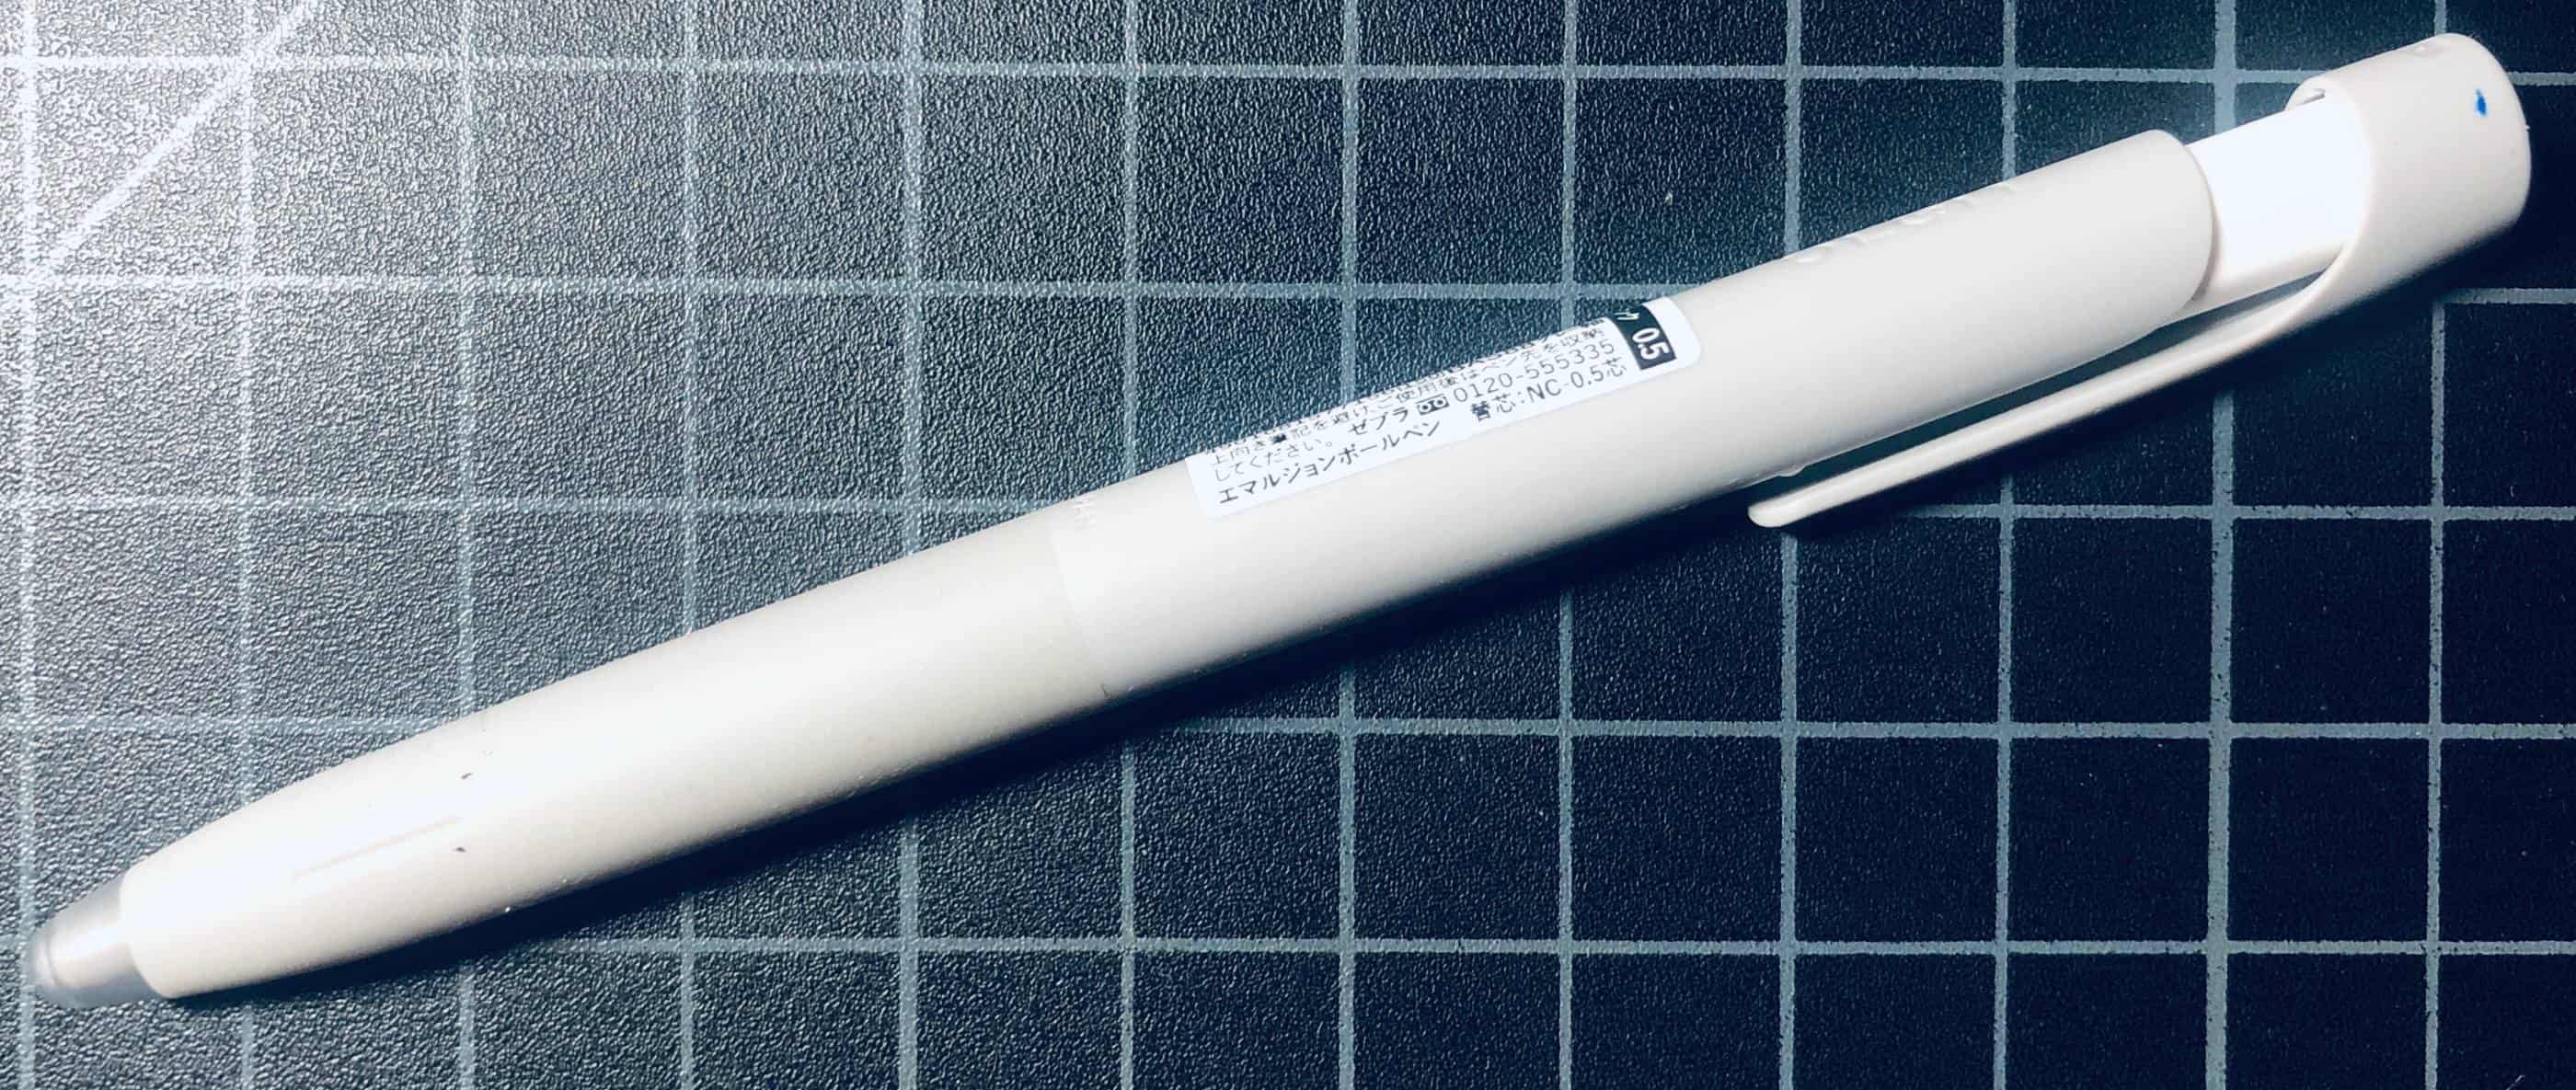 Zebra Blen Pen - 0.5 mm - White Body - Blue Ink